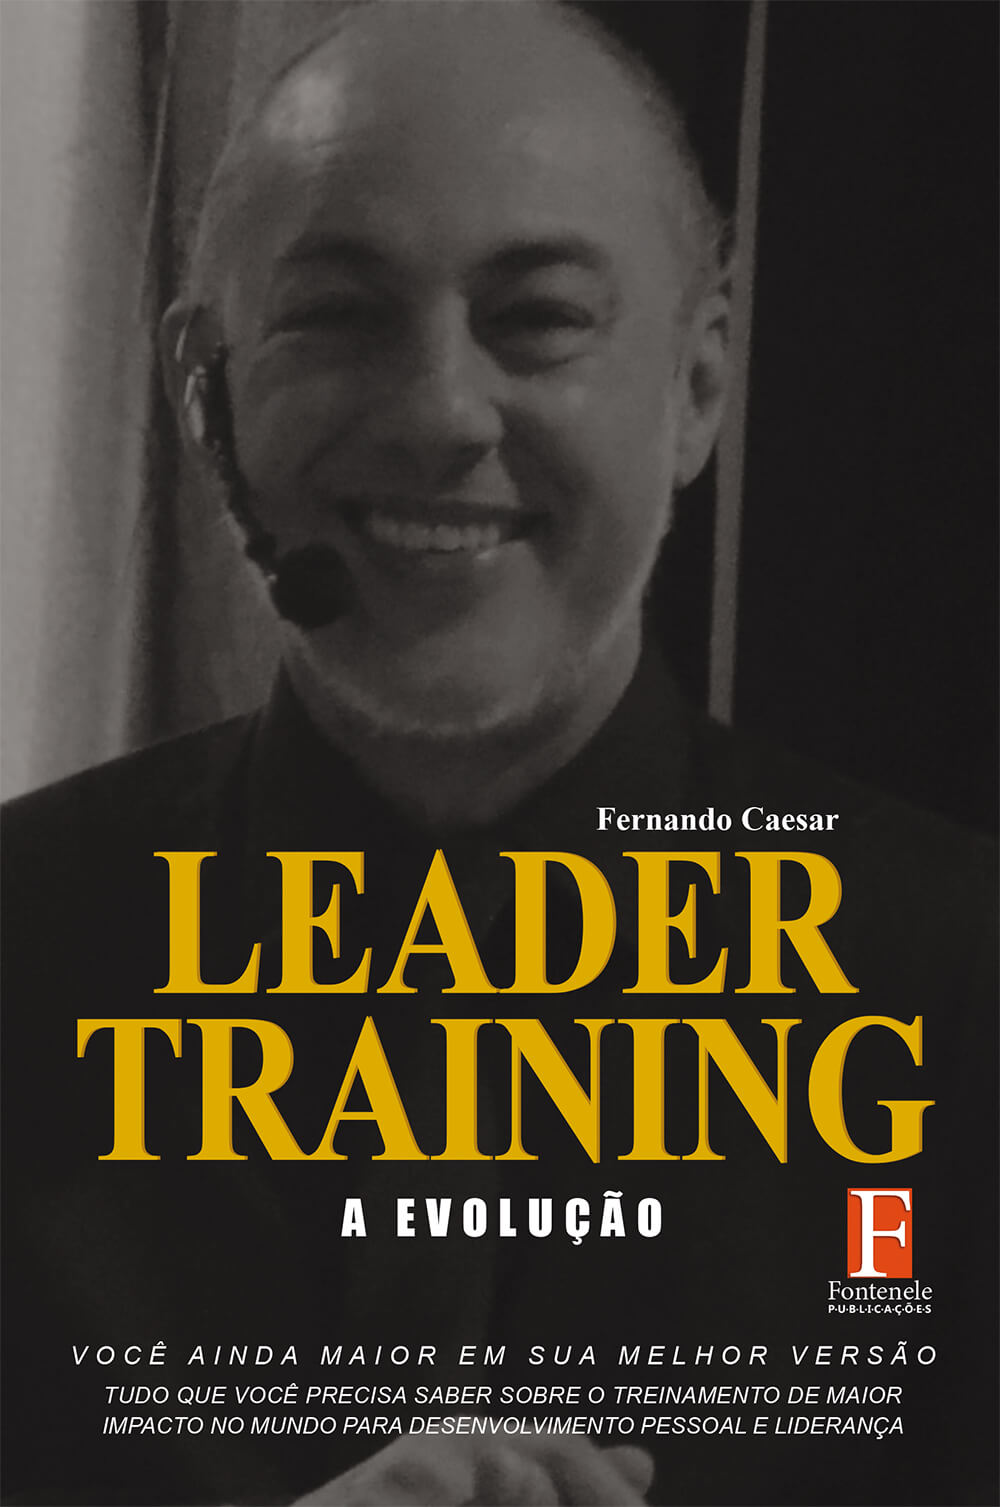 Fontenele Publicações / 11 95150-3481 / 11  95150-4383 Educação - Leader Training: a evolução